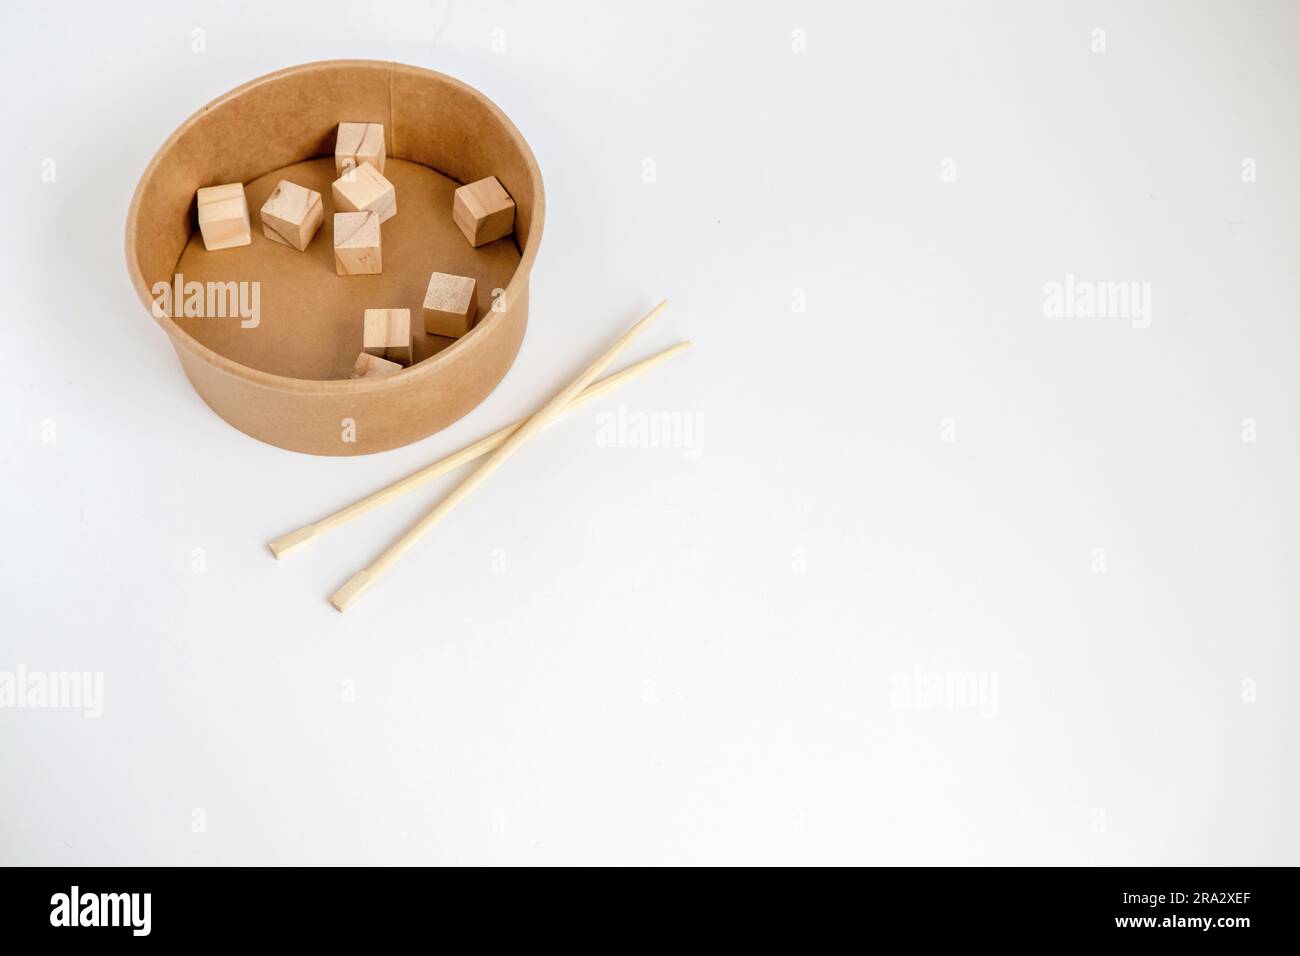 Bacchette di bambù e scatola di carta riciclata con cubi di legno all'interno su sfondo bianco. Immagine concettuale Foto Stock